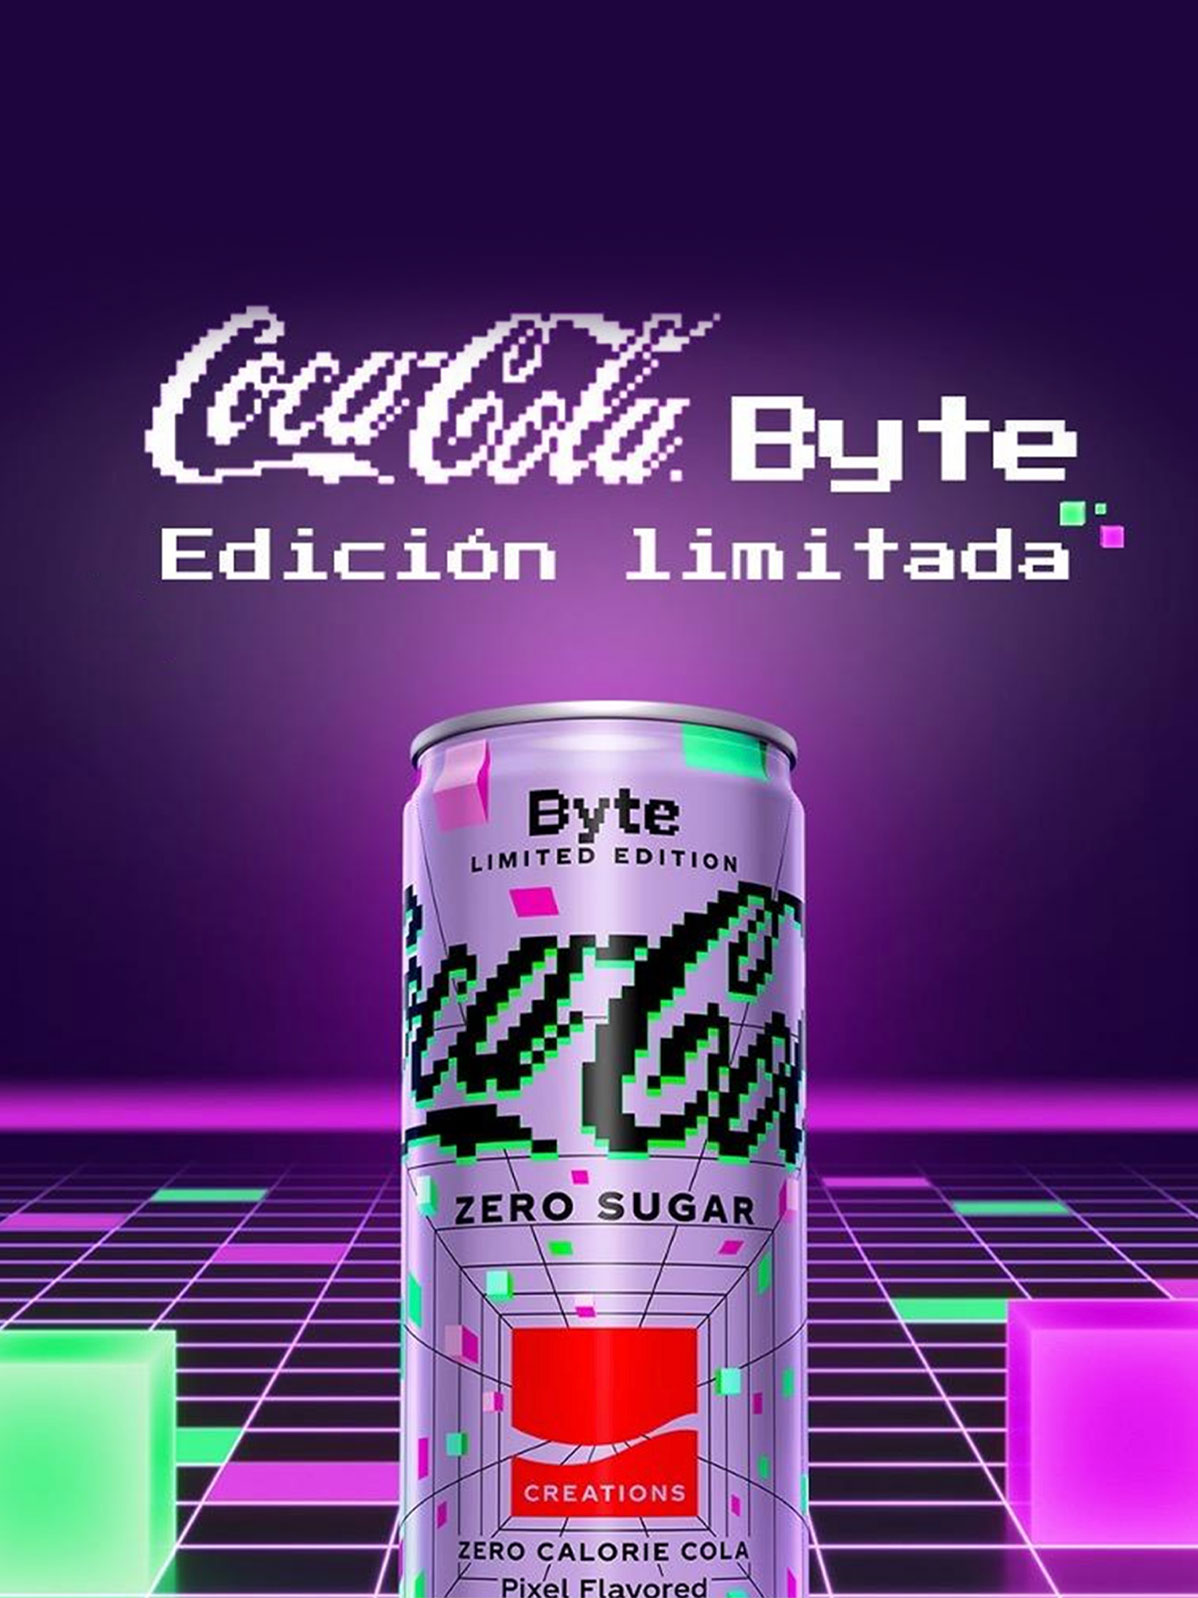 Lata de Coca-Cola Byte sobre fondo lila con logo de Coca-Cola y texto